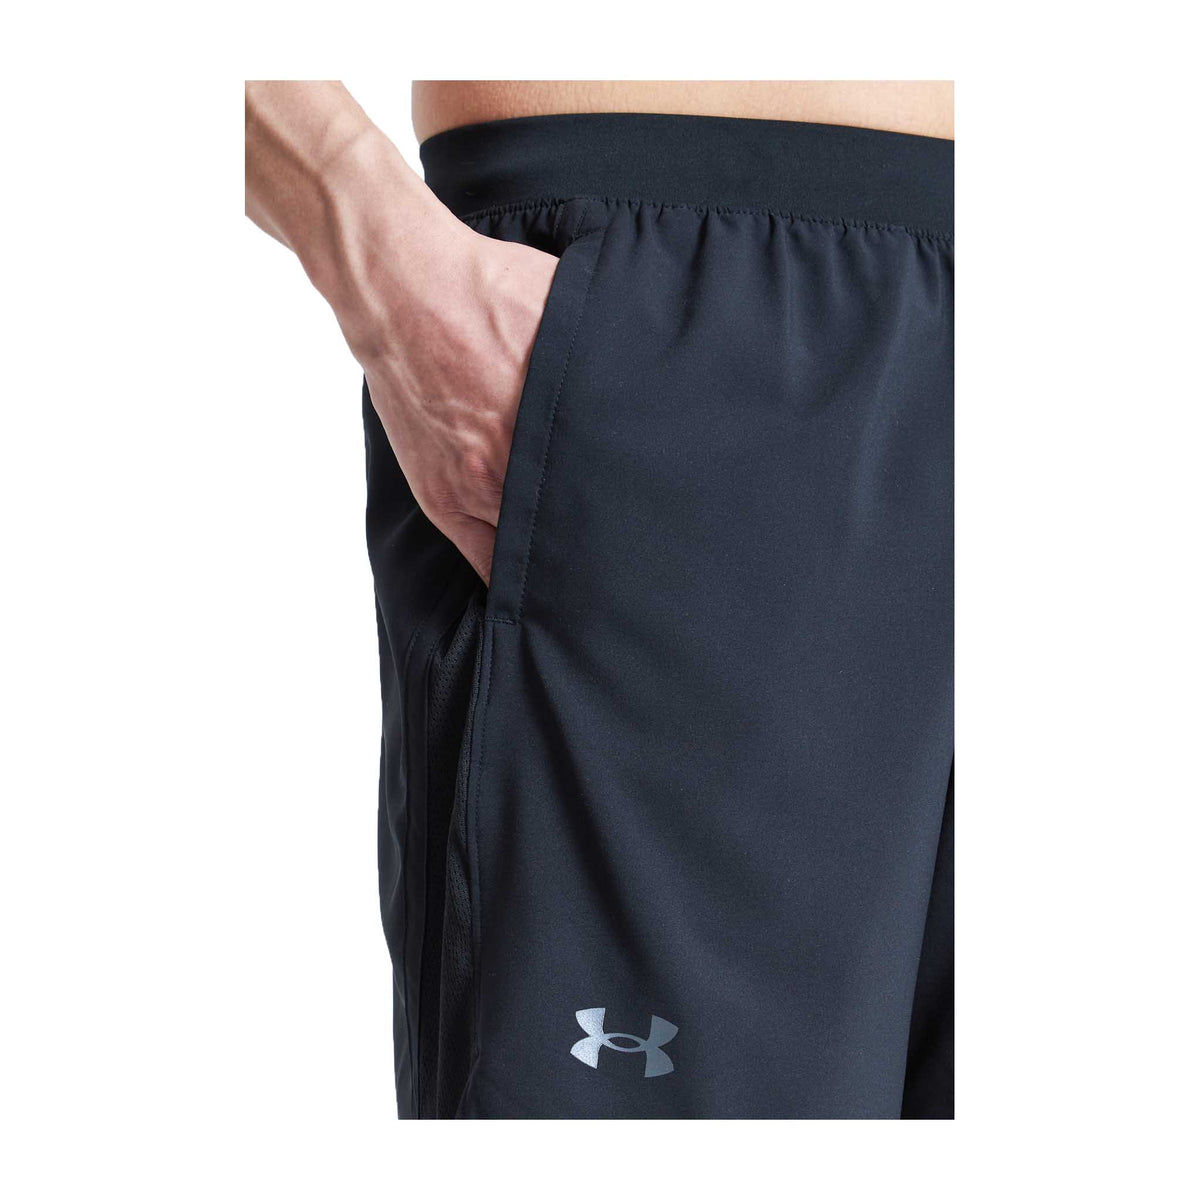 Under Armour Launch 7 pouces shorts homme poche- Black / Reflective